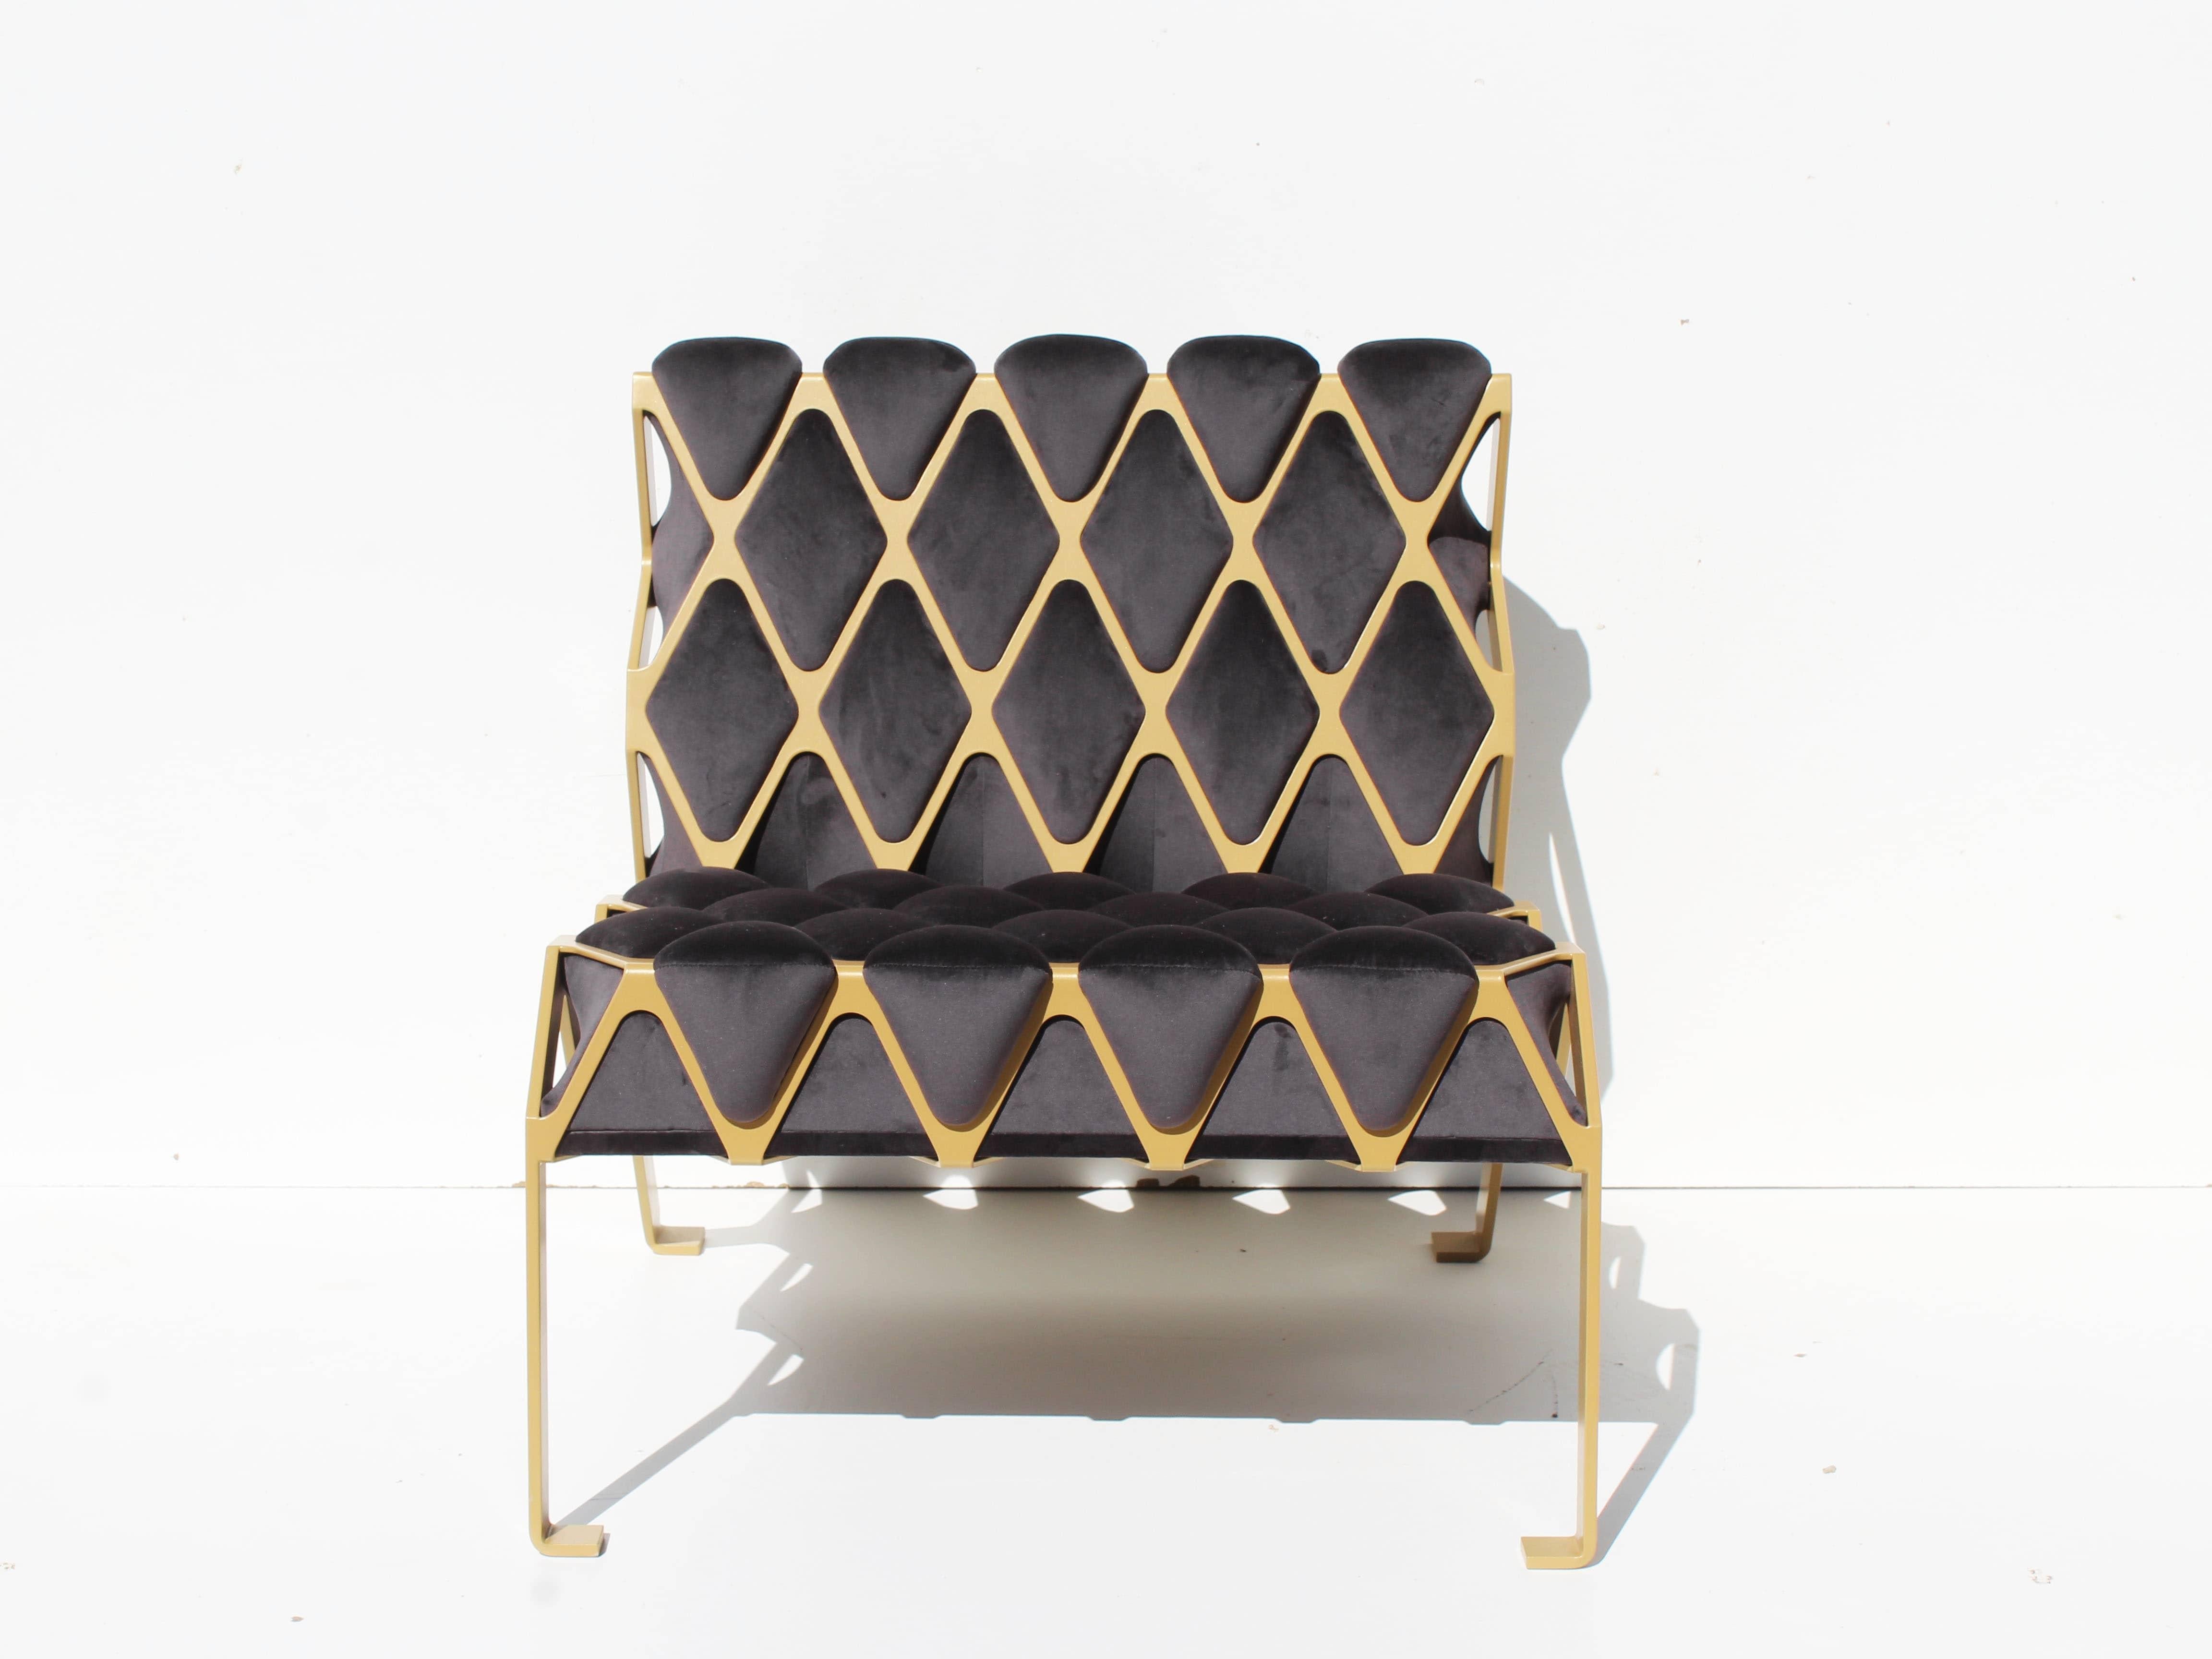 La chaise d'appoint Matrice est une chaise d'appoint conçue autour de l'empreinte. L'empreinte créée par l'interaction entre deux matériaux, l'un ductile et l'autre mou. Inspiration des photos de Gabriele Basilico sur des chaises imprimées

Matrice